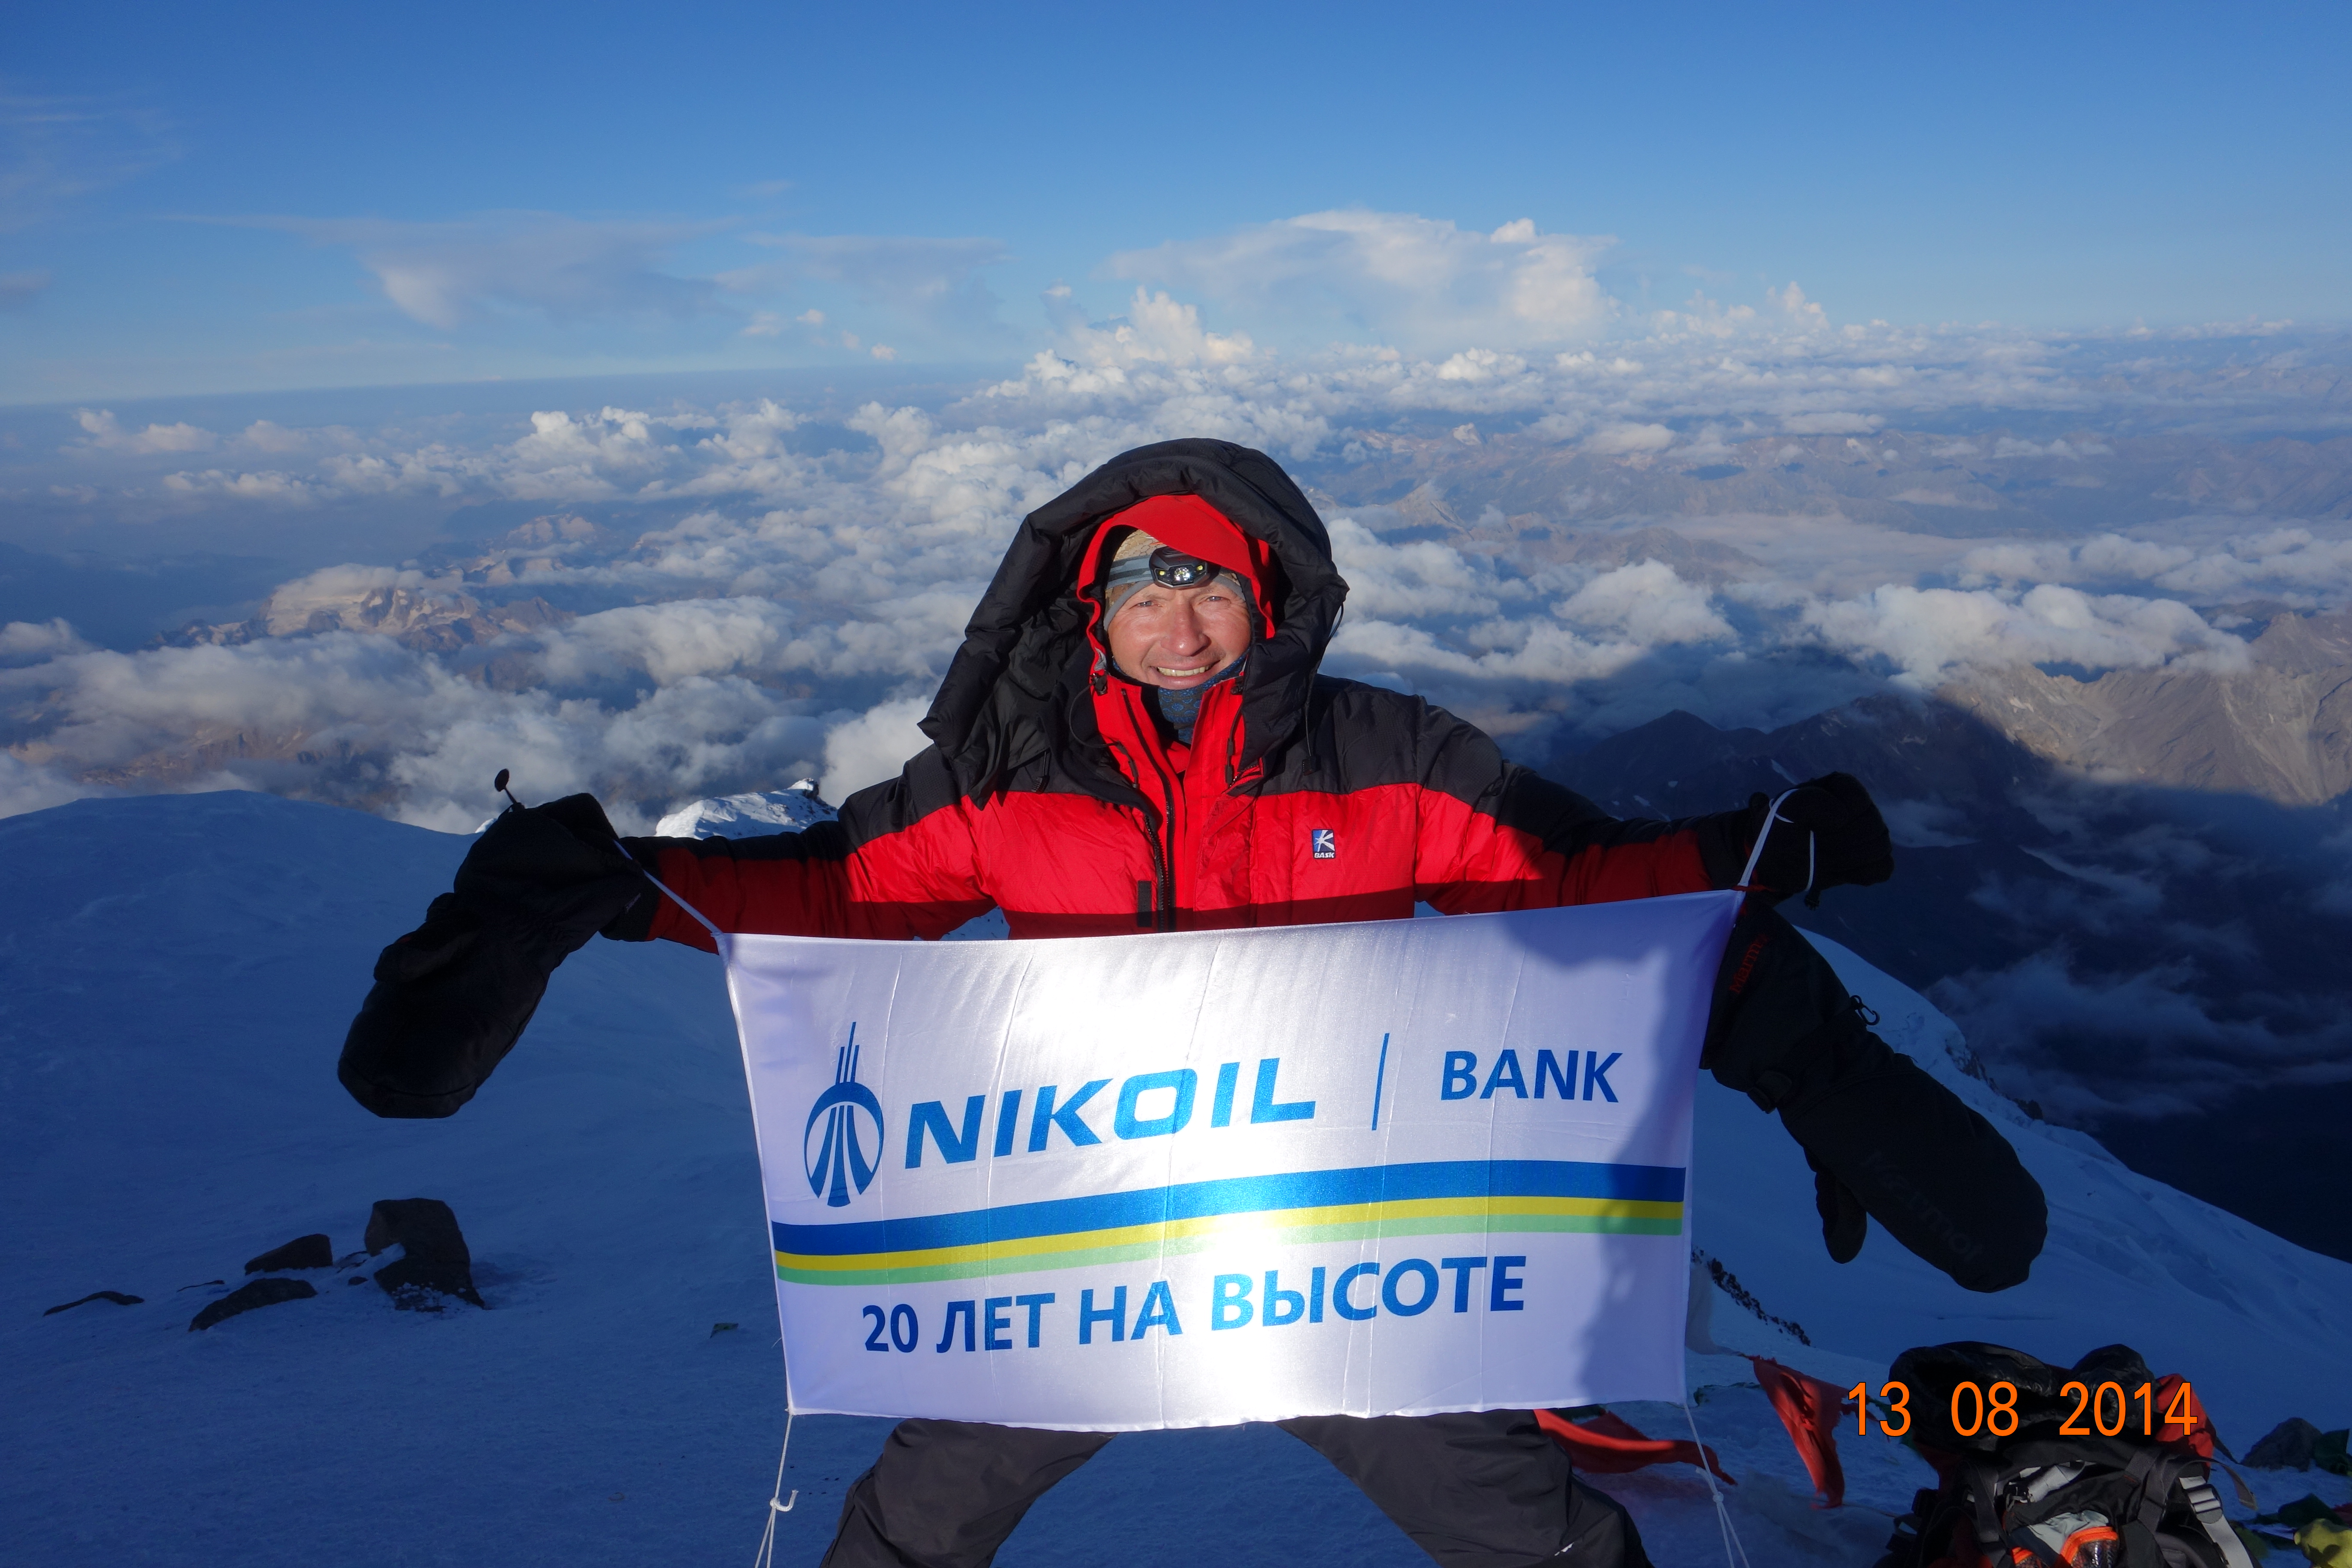 Команда альпинистов Азербайджана при участии Председателя Правления NIKOIL | Bank-а покорила вершину Эльбрус – 5642 м. над уровнем моря